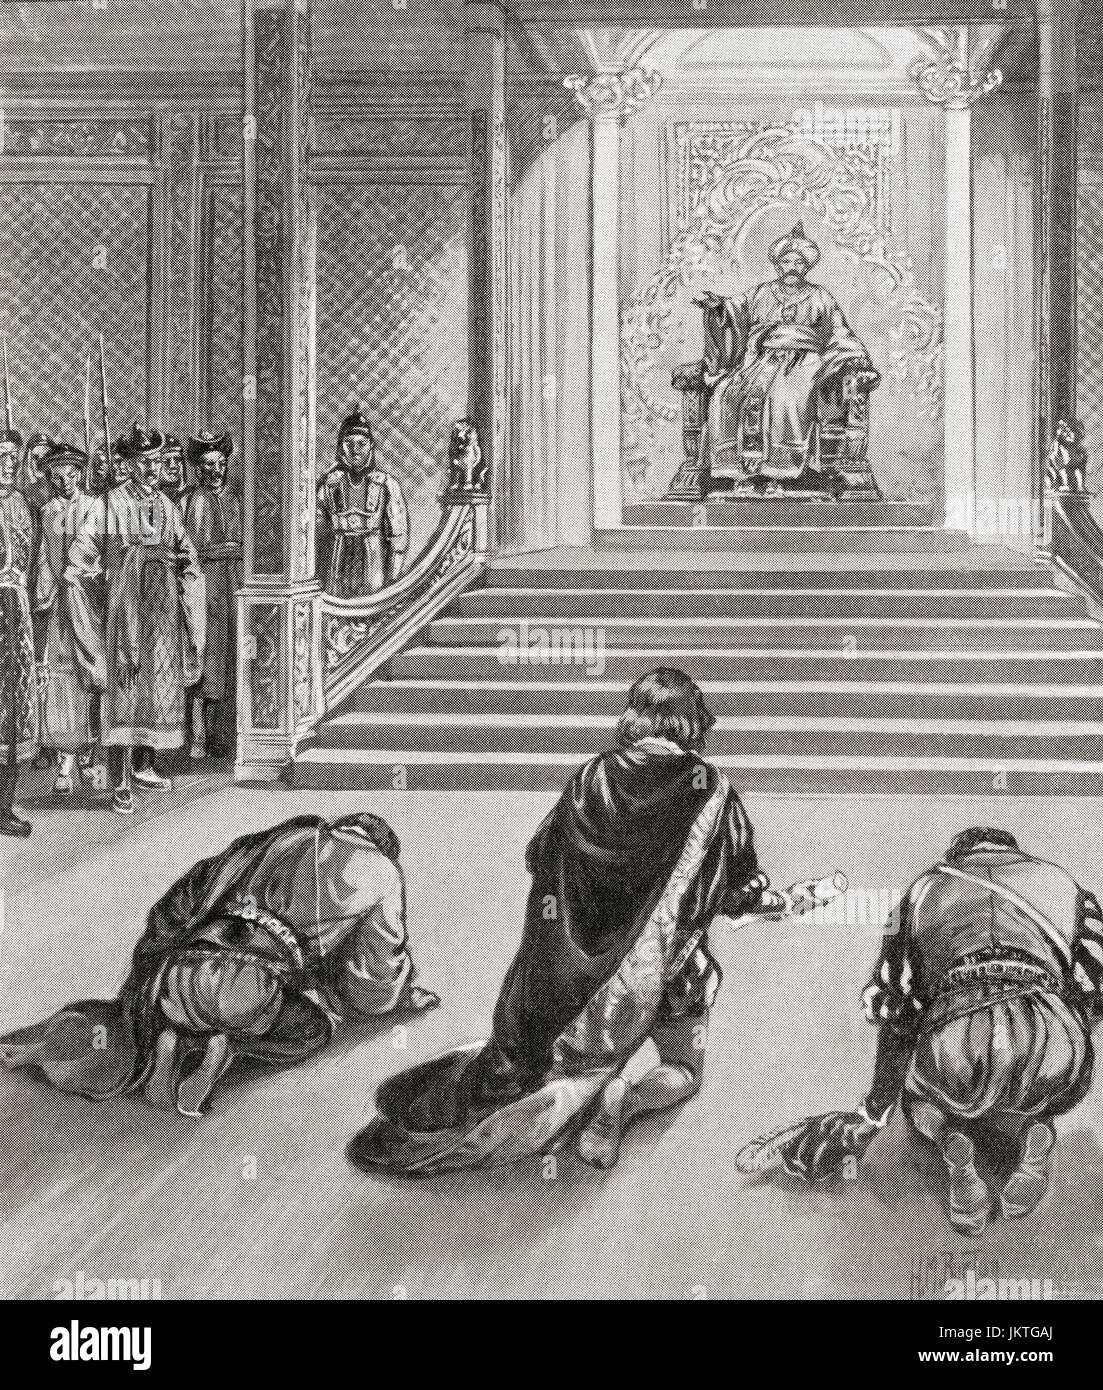 La llegada de Marco Polo en la corte de Kublai Khan, China, c.1274. Marco Polo, 1254 - 1324. Viajero comerciante veneciano. La historia de Hutchinson de las Naciones, publicado en 1915. Foto de stock